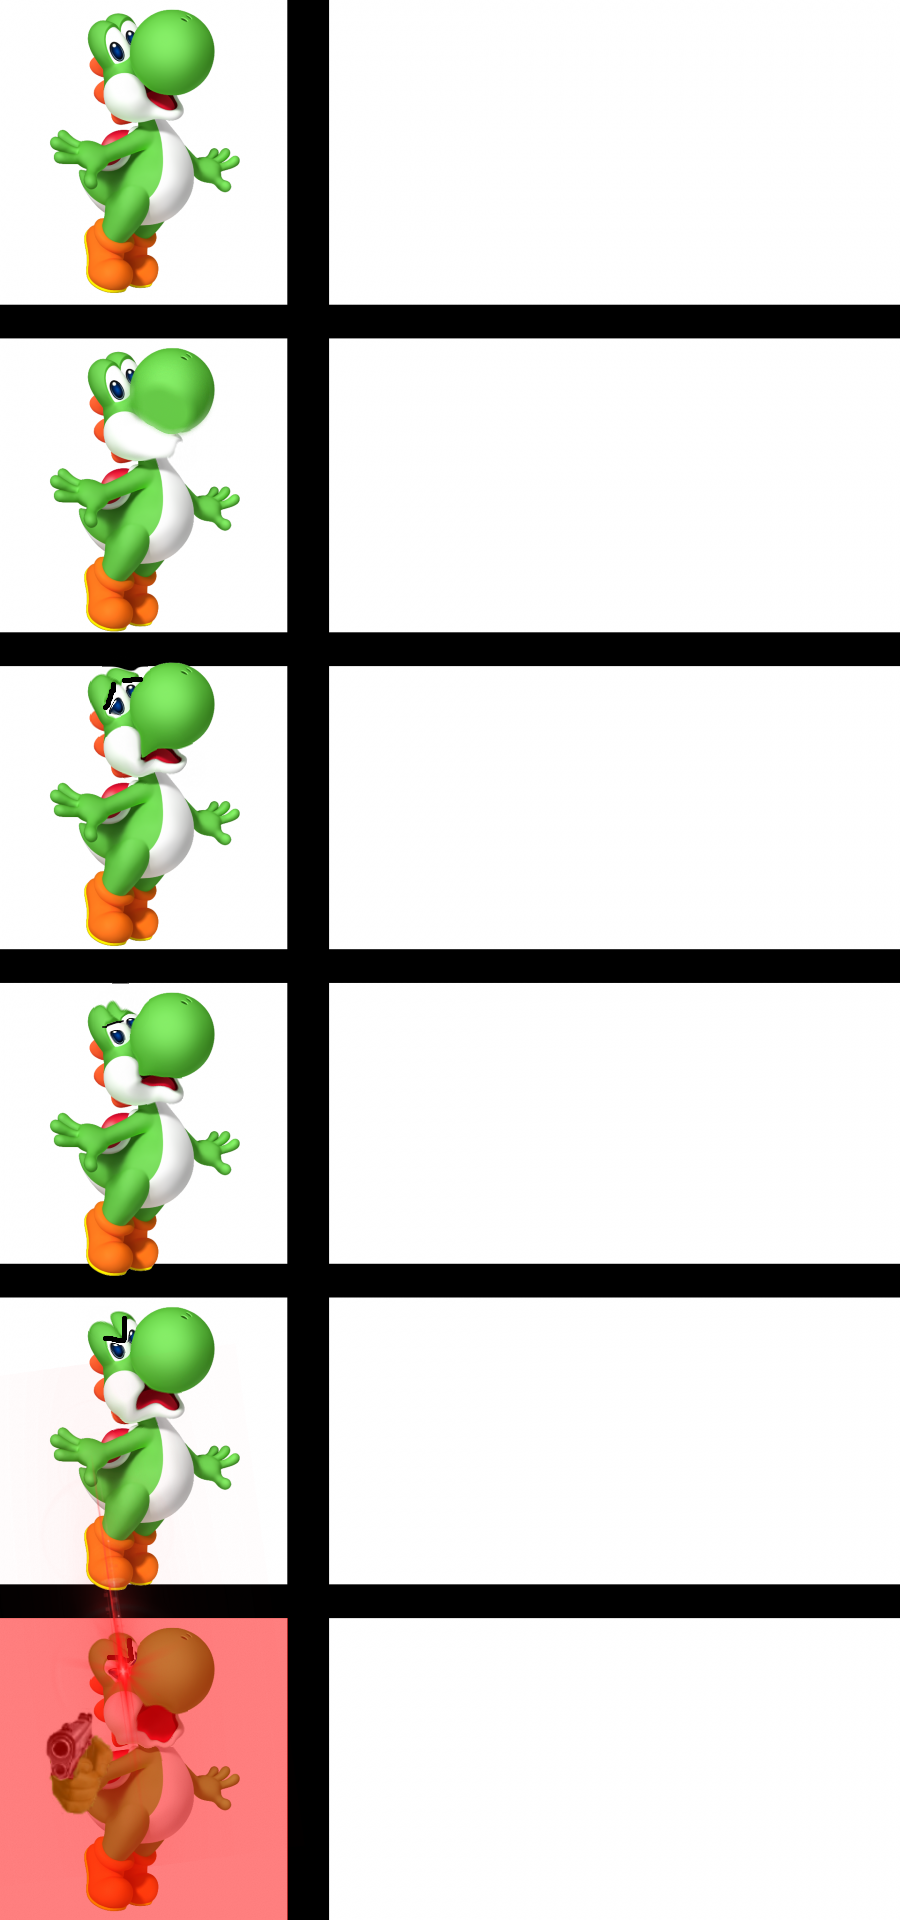 High Quality Yoshi becomes angry Blank Meme Template